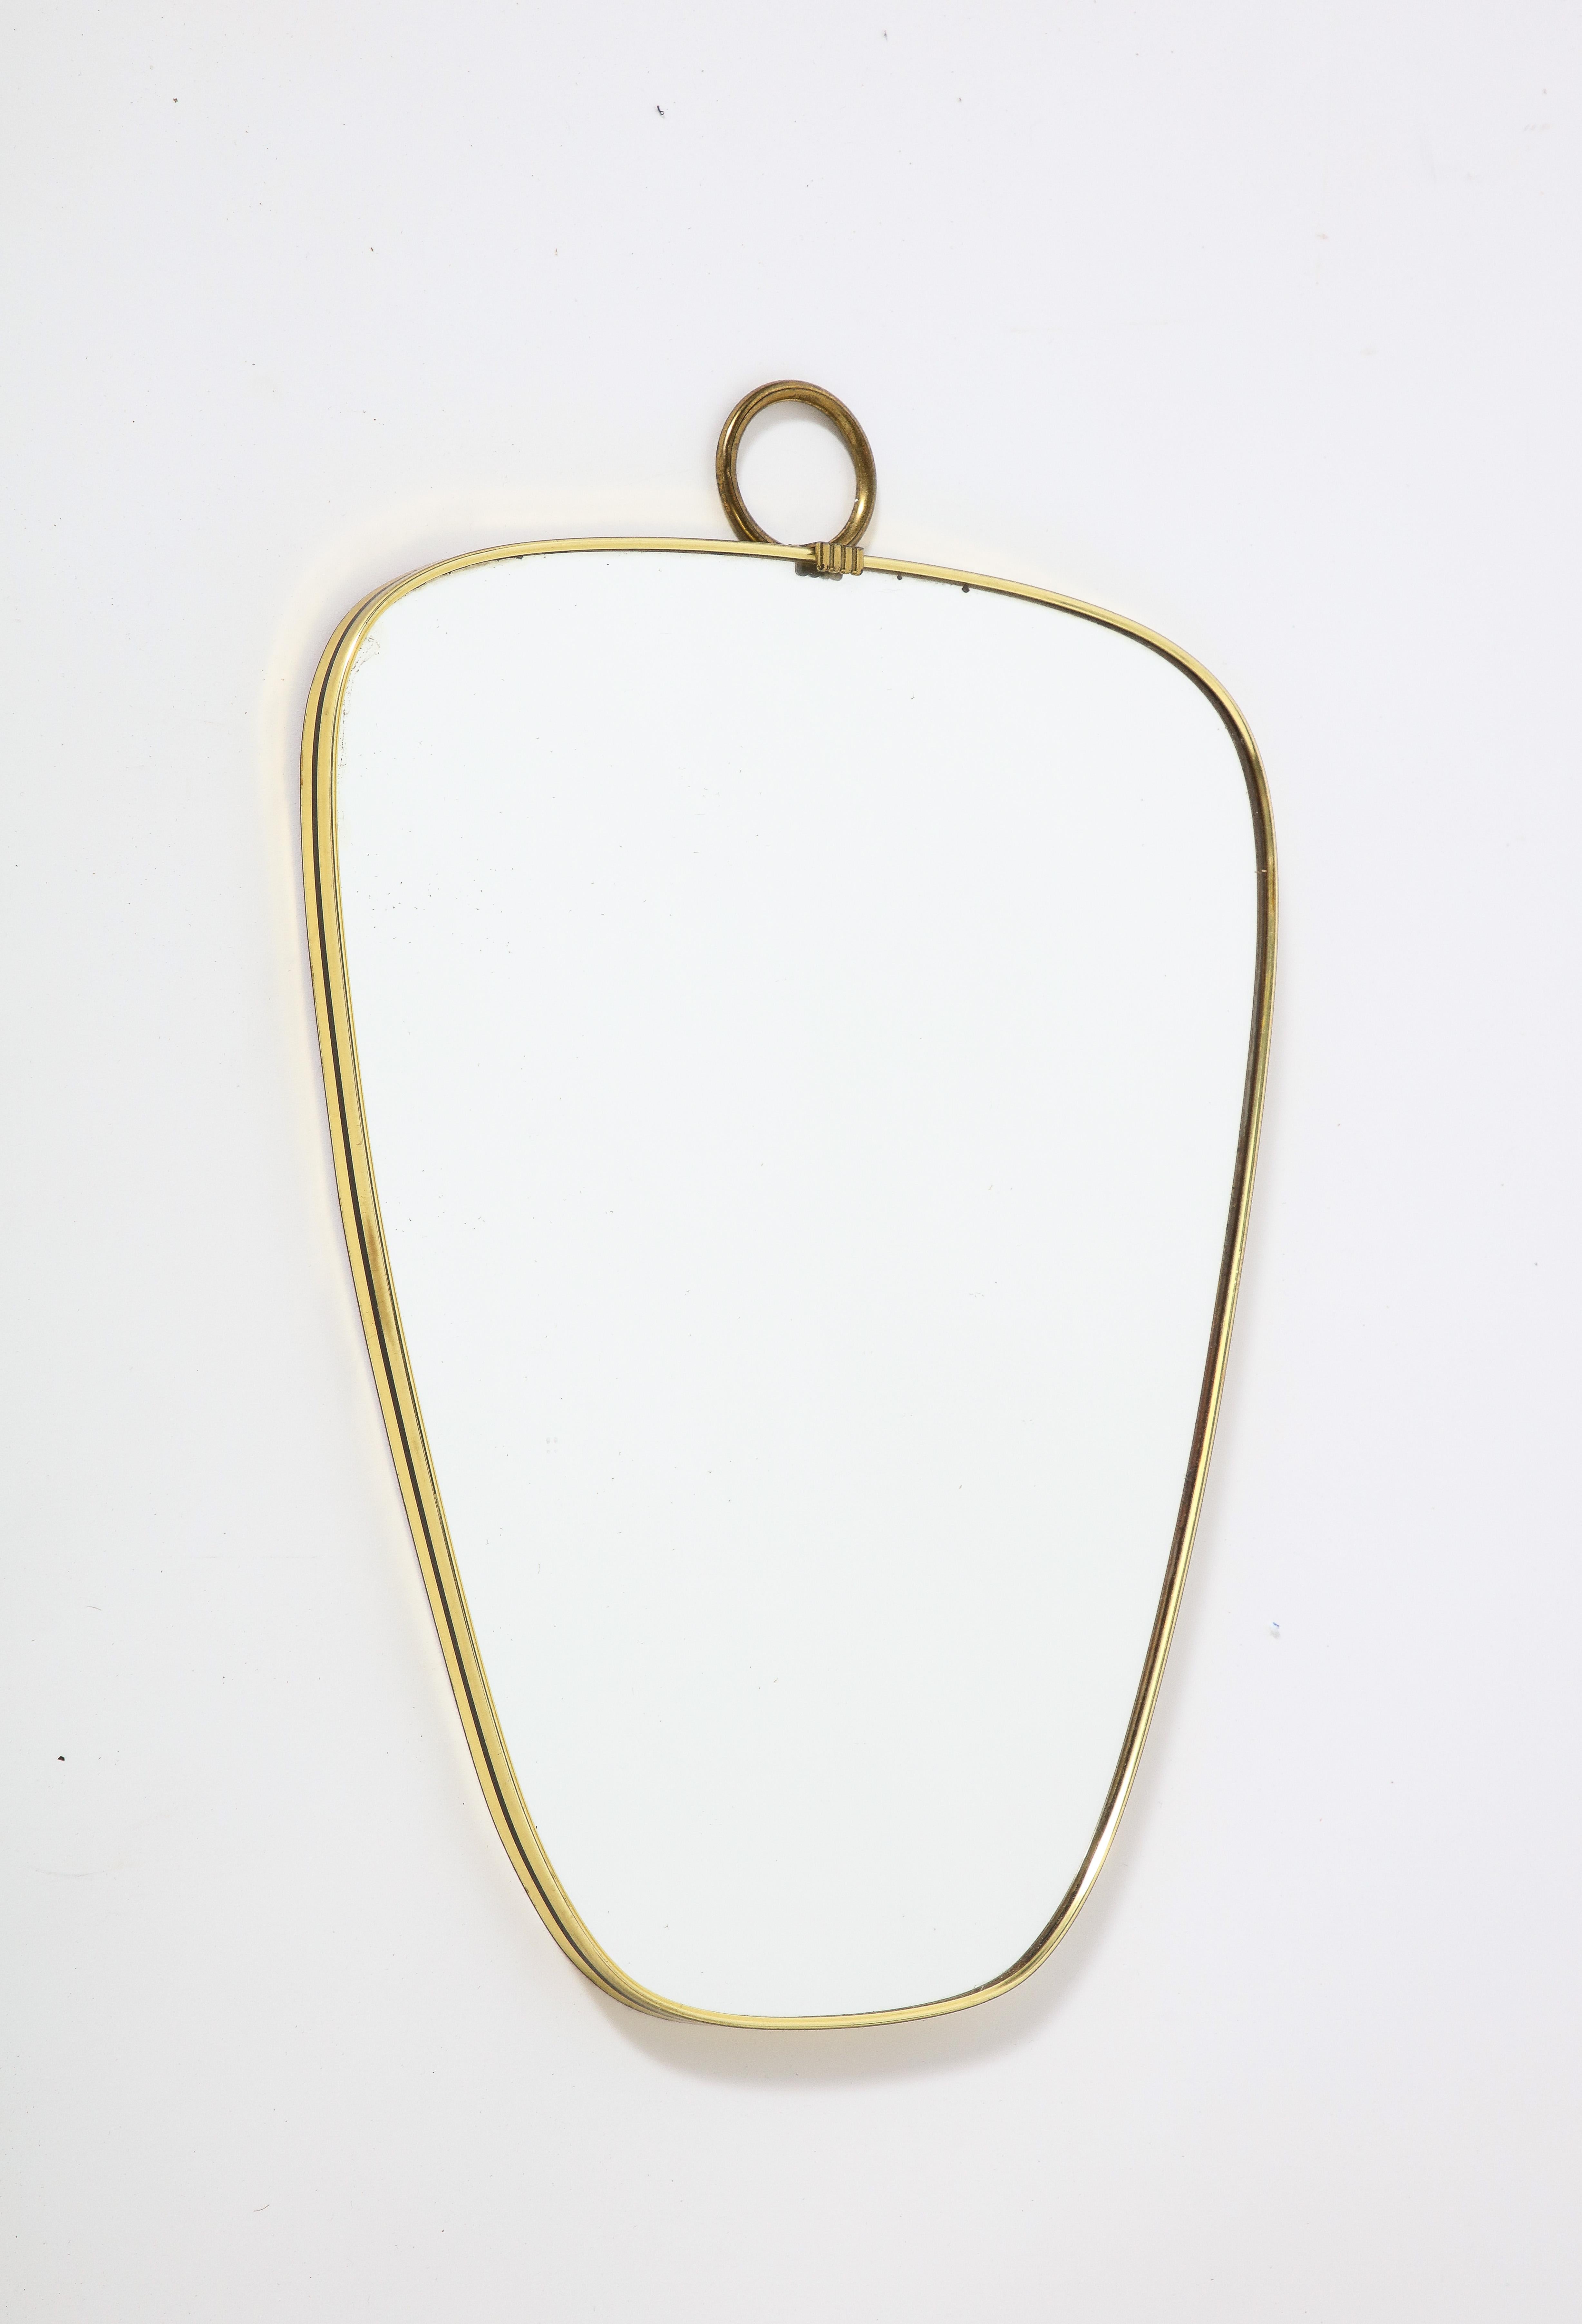 Charmant petit miroir moderniste italien en forme de laiton avec une bande de métal noir sur la moulure et un anneau avec un motif de feston au niveau de la crête.  
Italie, vers la fin des années 1960 / 1970
Taille : 17 3/4